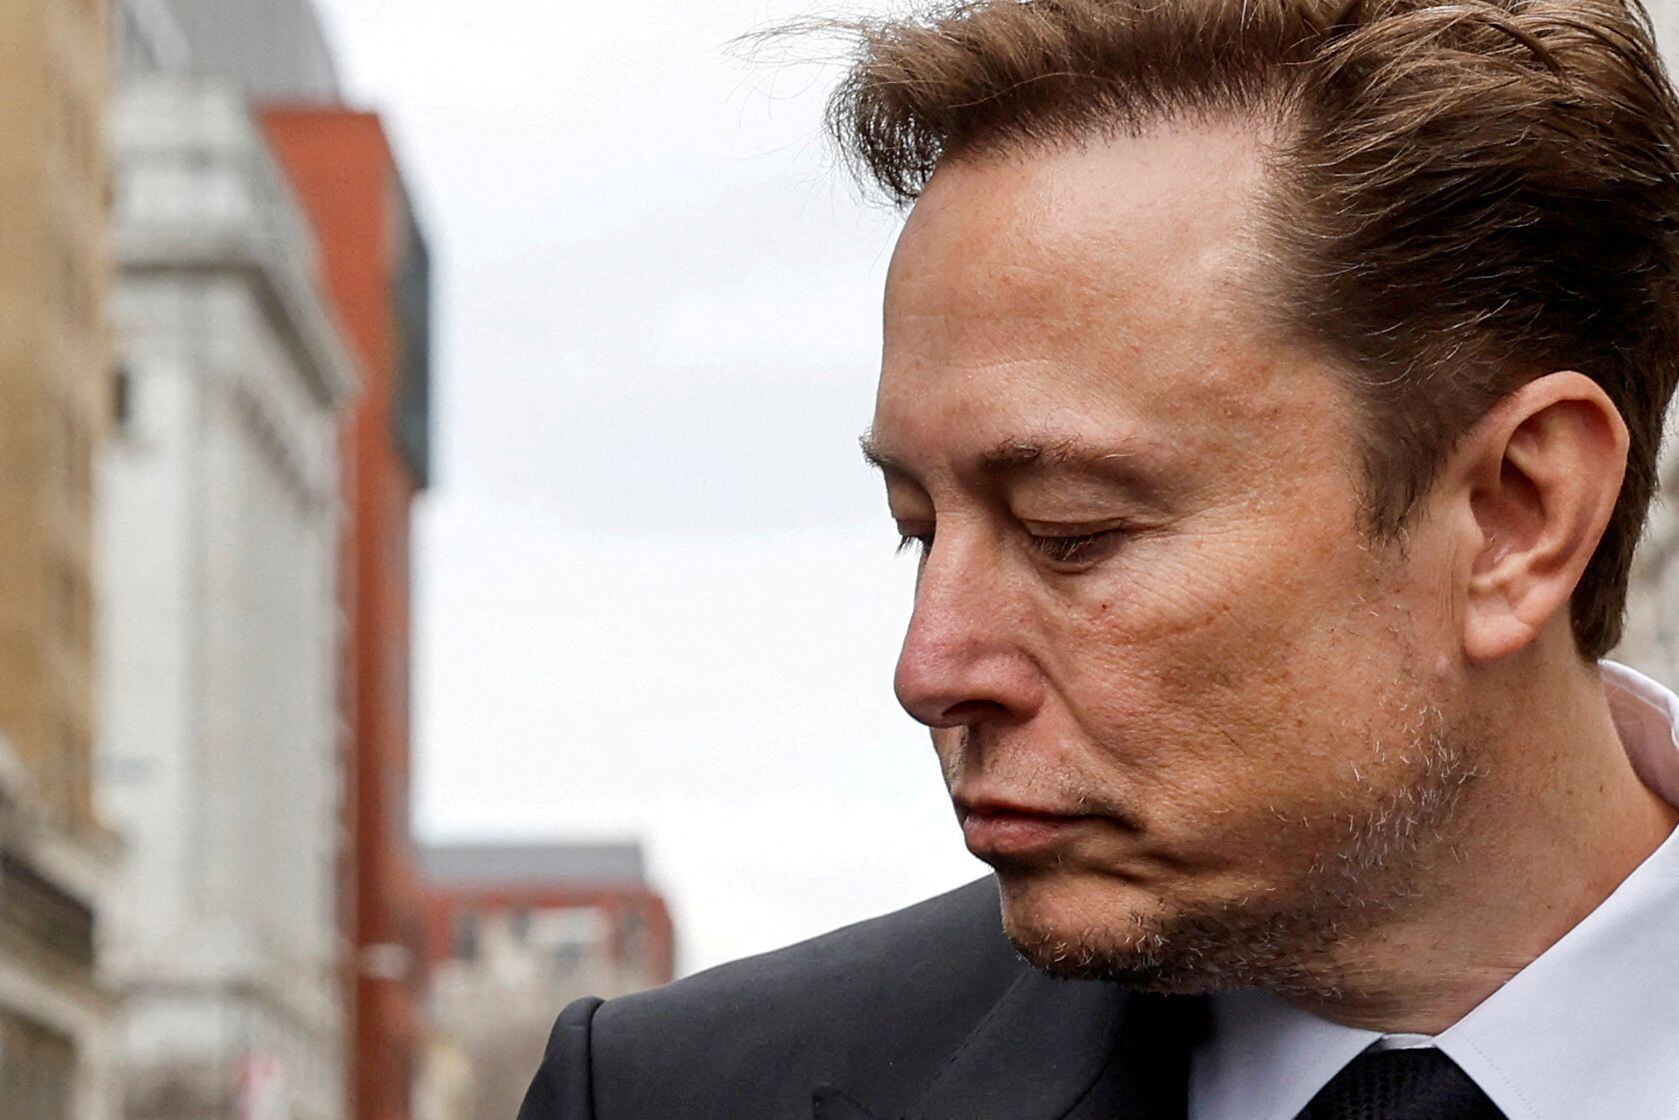 Elon Musk respondió a la mujer aclarando que "hará las cosas bien" con la panadería. (REUTERS/Jonathan Ernst/File Photo)